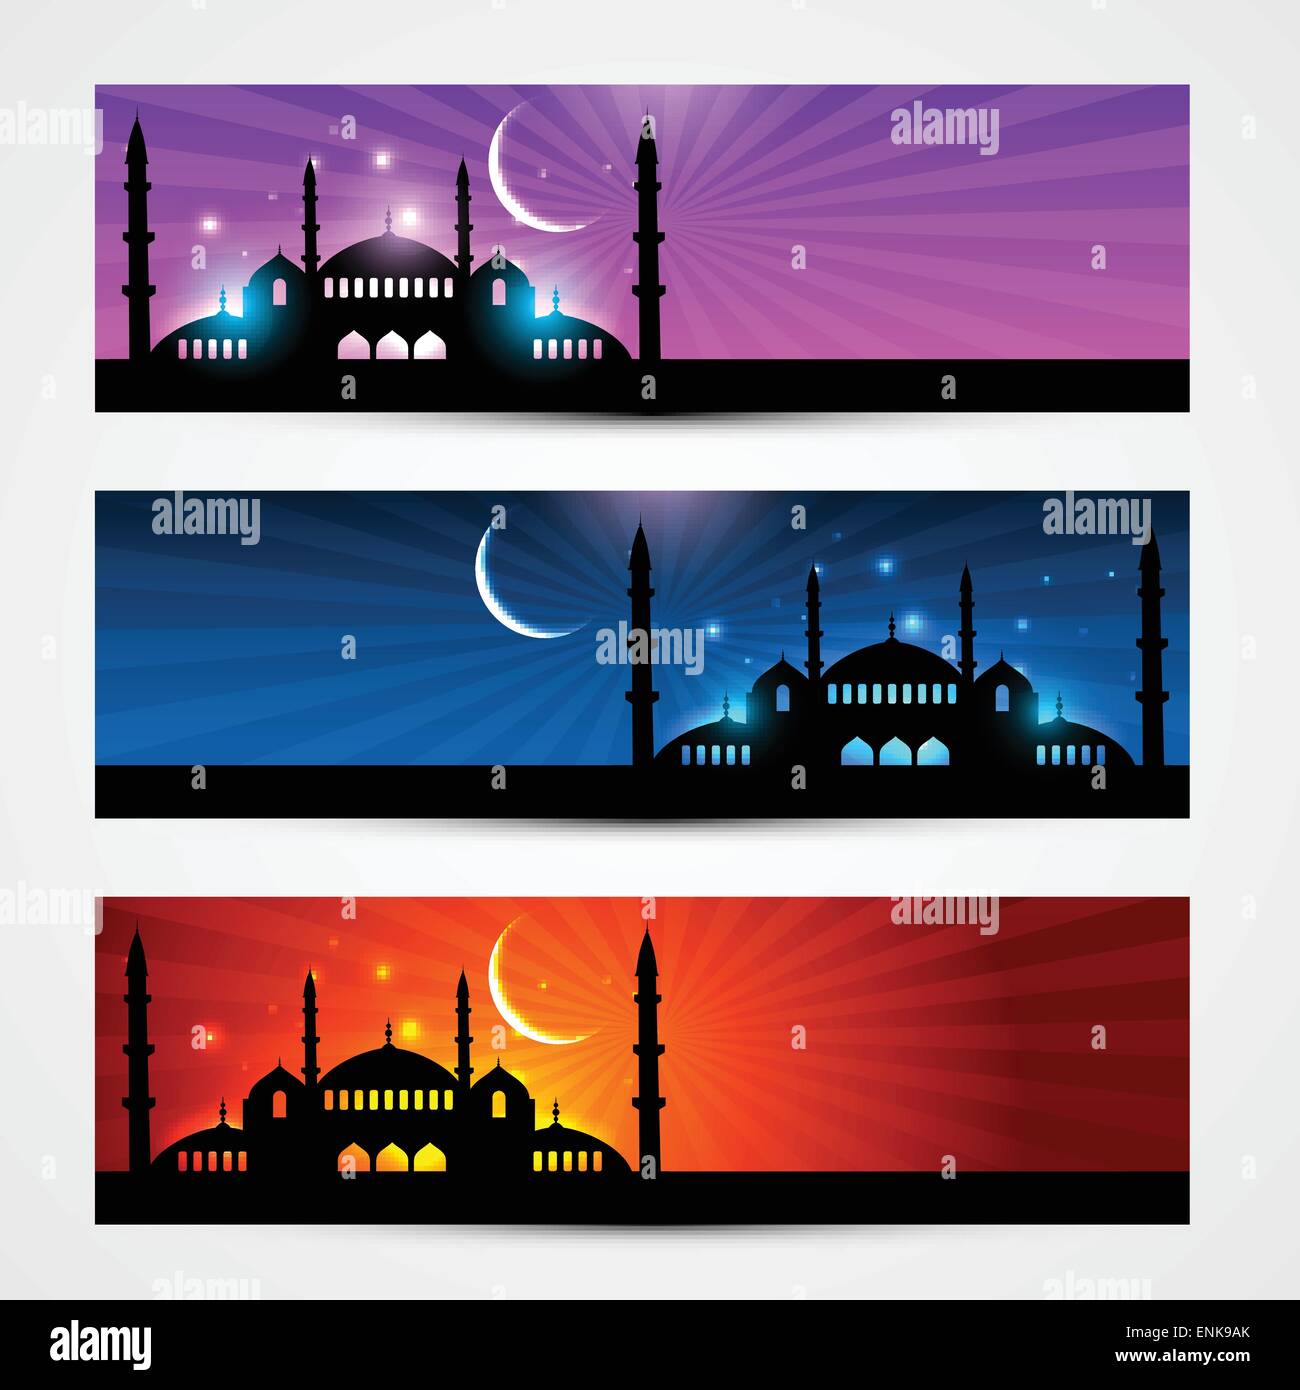 Ramadan Kareem: Chào mừng đến với Ramadan Kareem! Hãy cùng nhau tận hưởng không khí đặc biệt của tháng Ramadan với hình ảnh đầy sắc màu và ý nghĩa. Bạn sẽ được dẫn đến một thế giới đầy tình yêu, sự kiên nhẫn và lòng hy sinh, chào đón một tháng tràn đầy ý nghĩa.